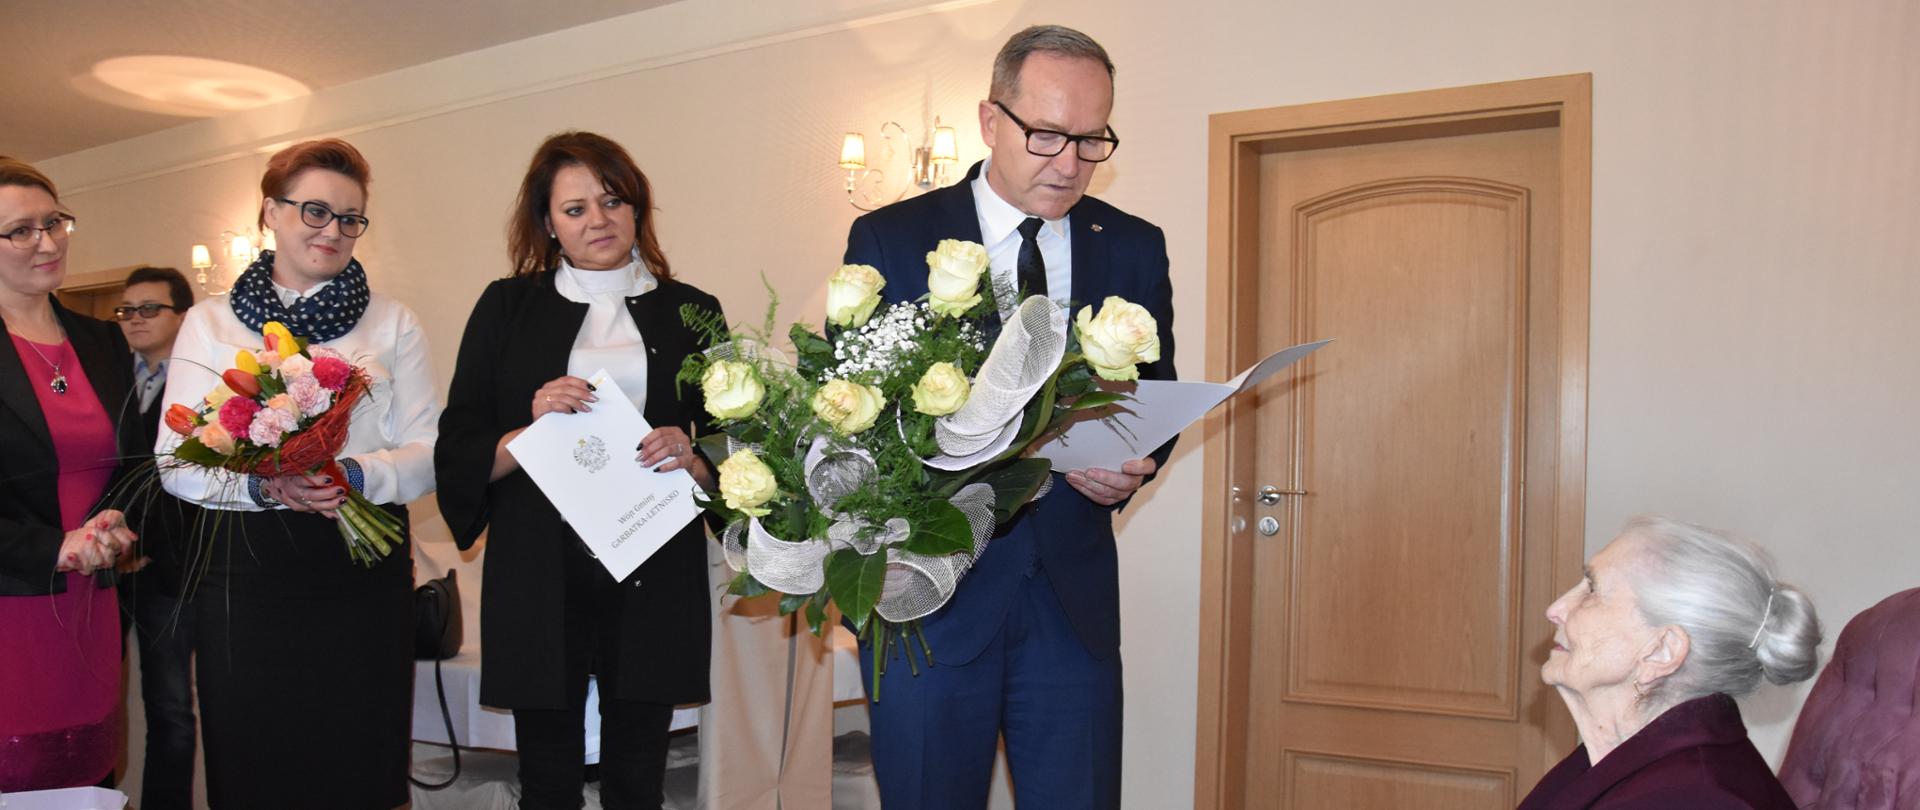 Kierownik Krzysztof Murawski odczytuje Jubilatce list od Premiera.